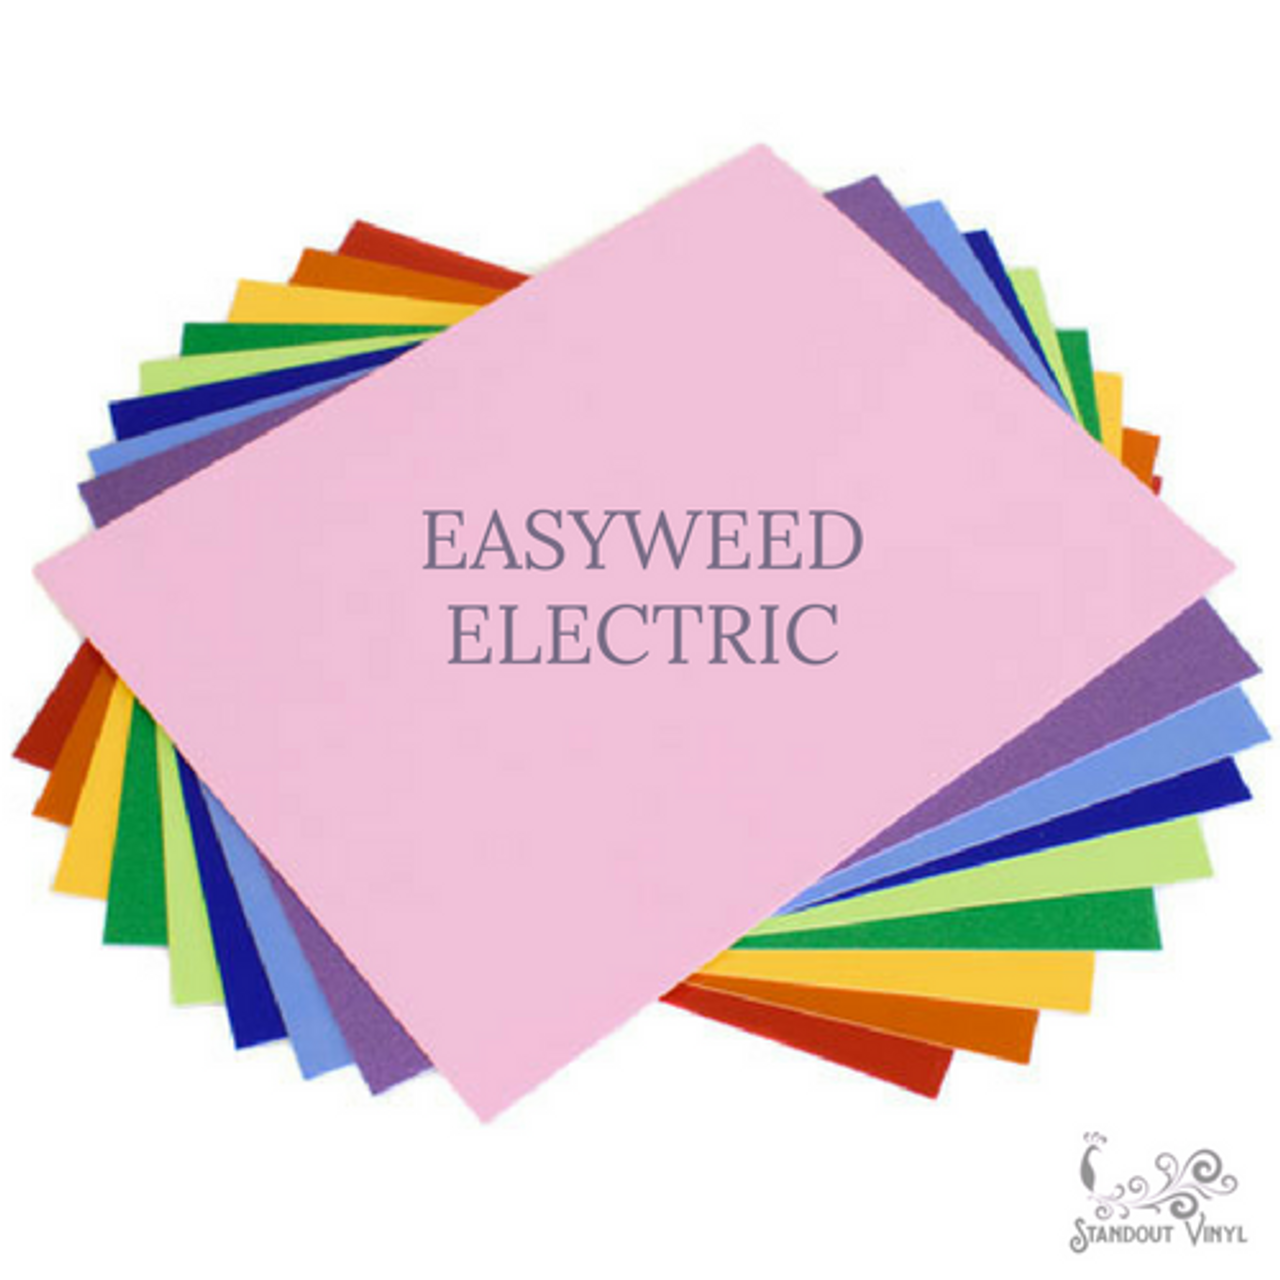 Siser EasyWeed Heat Transfer Vinyl Sheets (HTV)